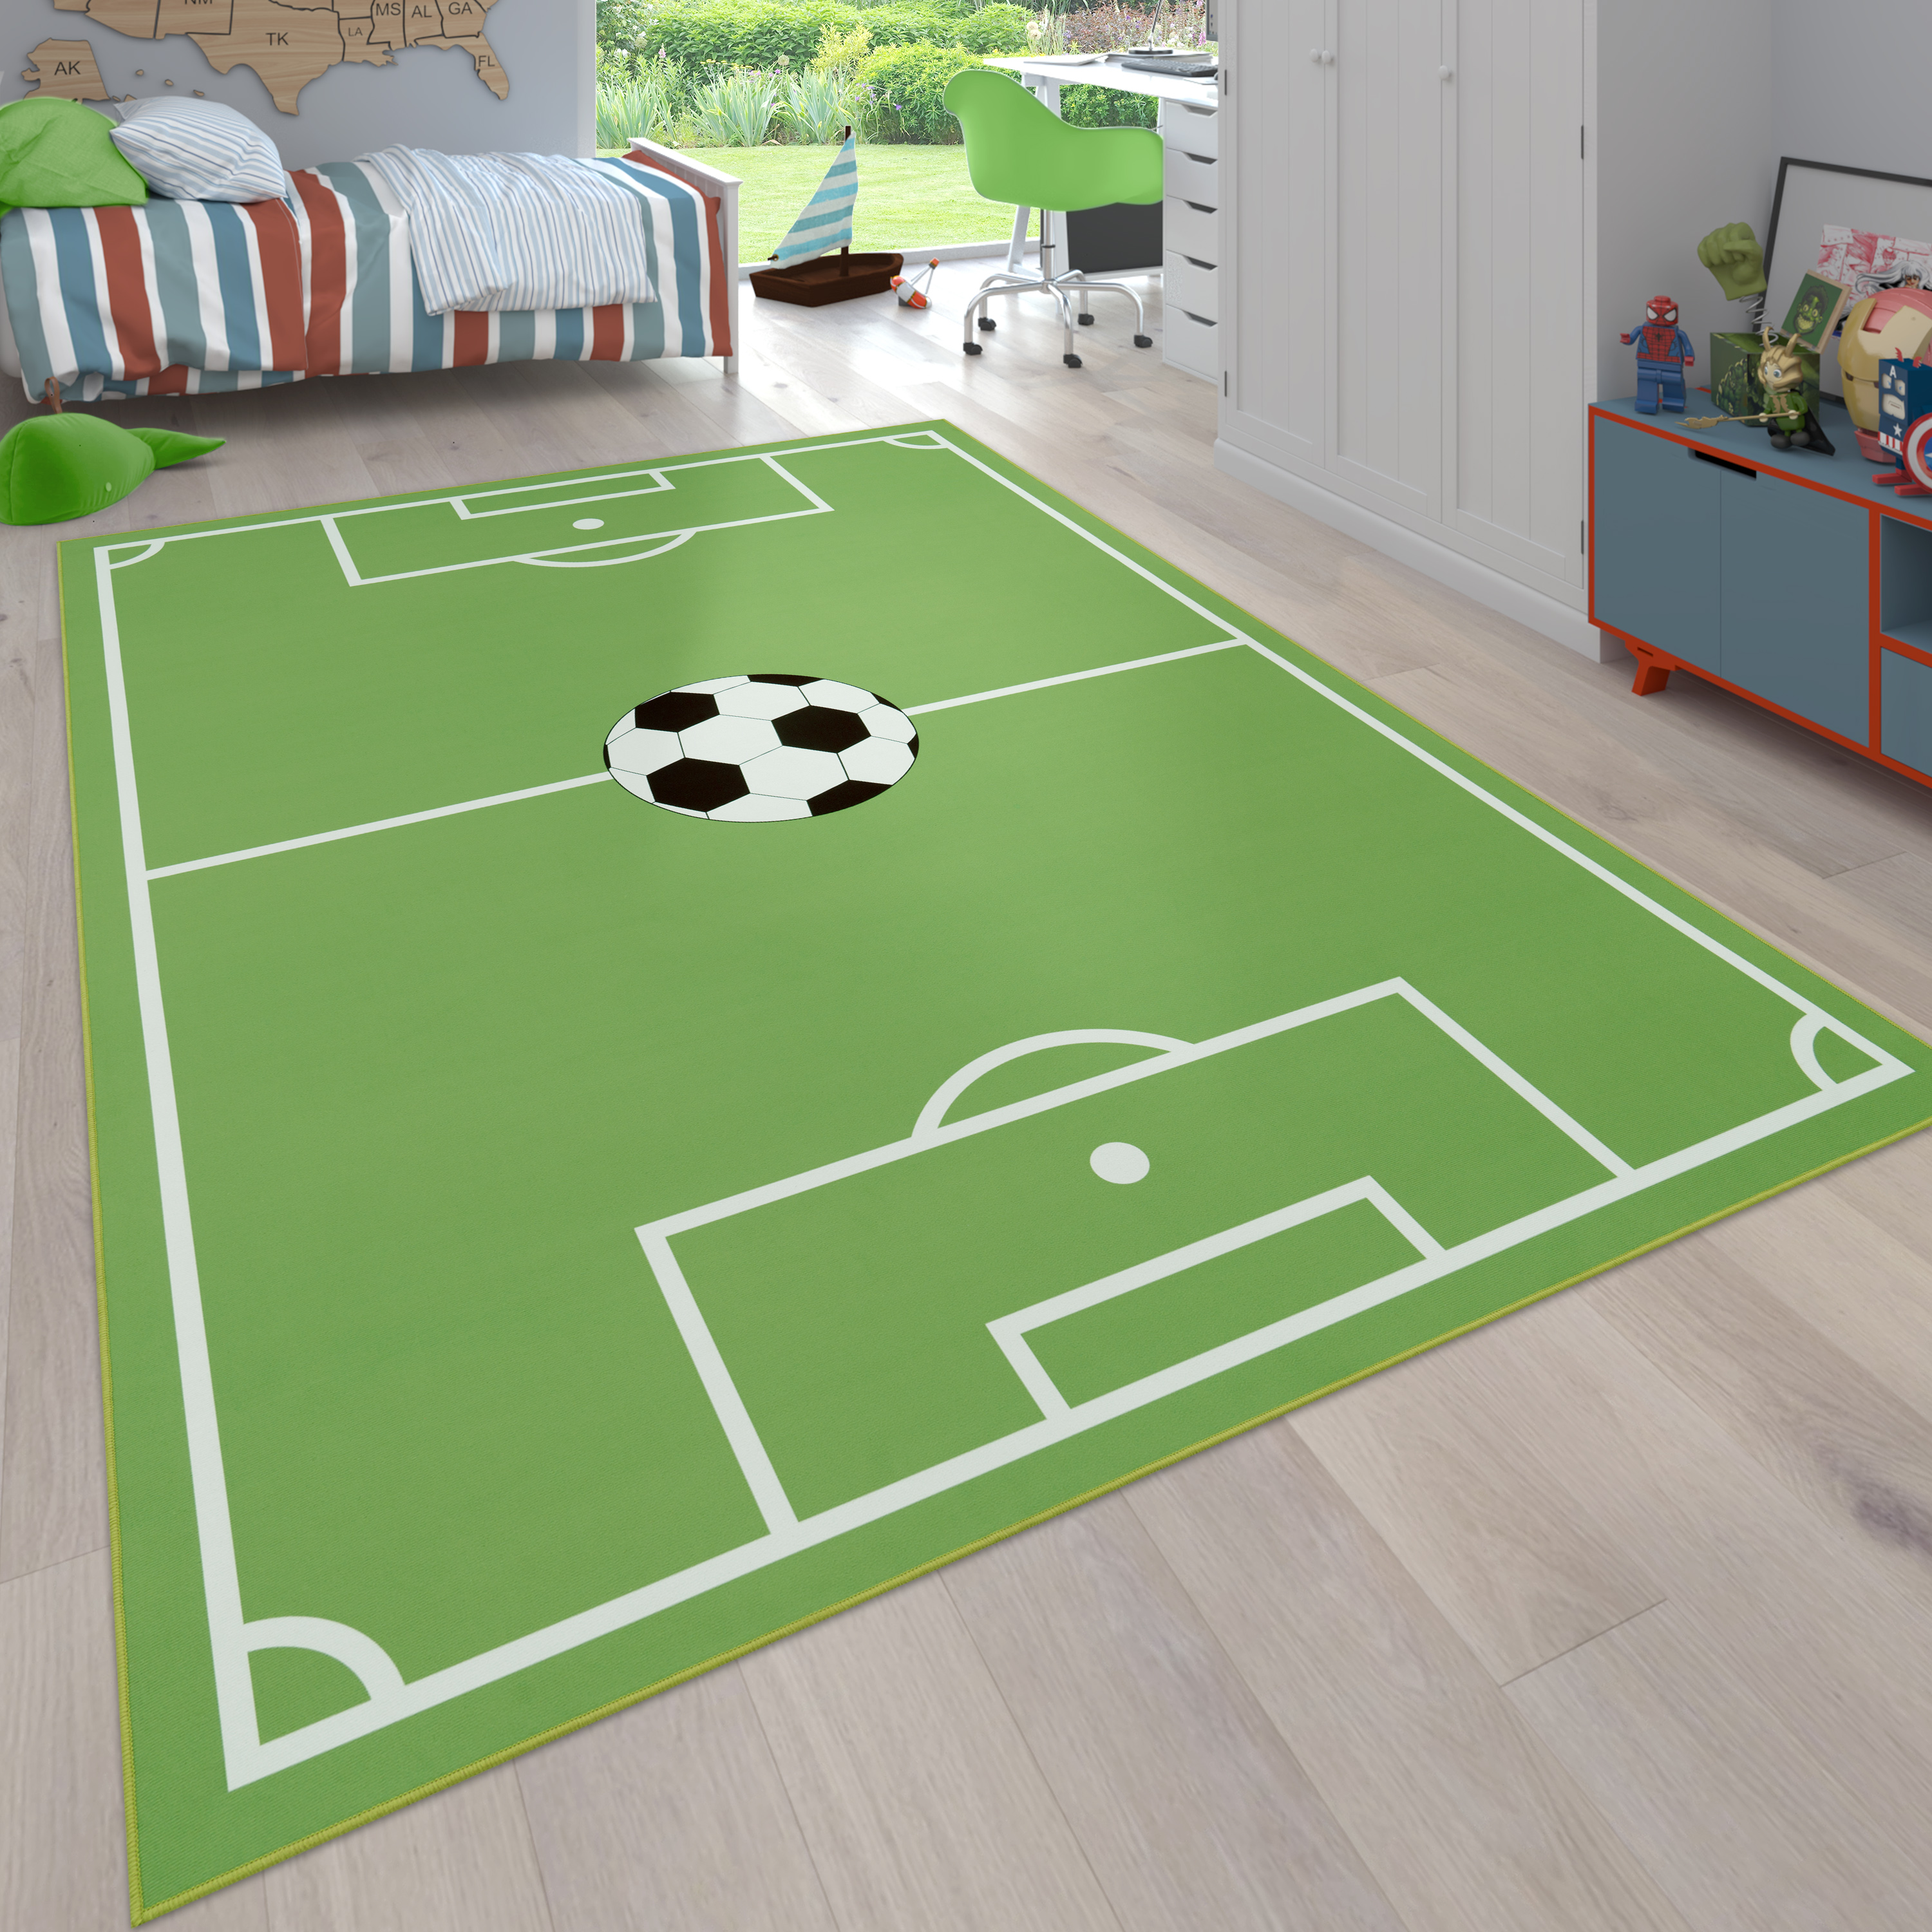 Kinder-Teppich Kinderzimmer Fußball-Design Grün 